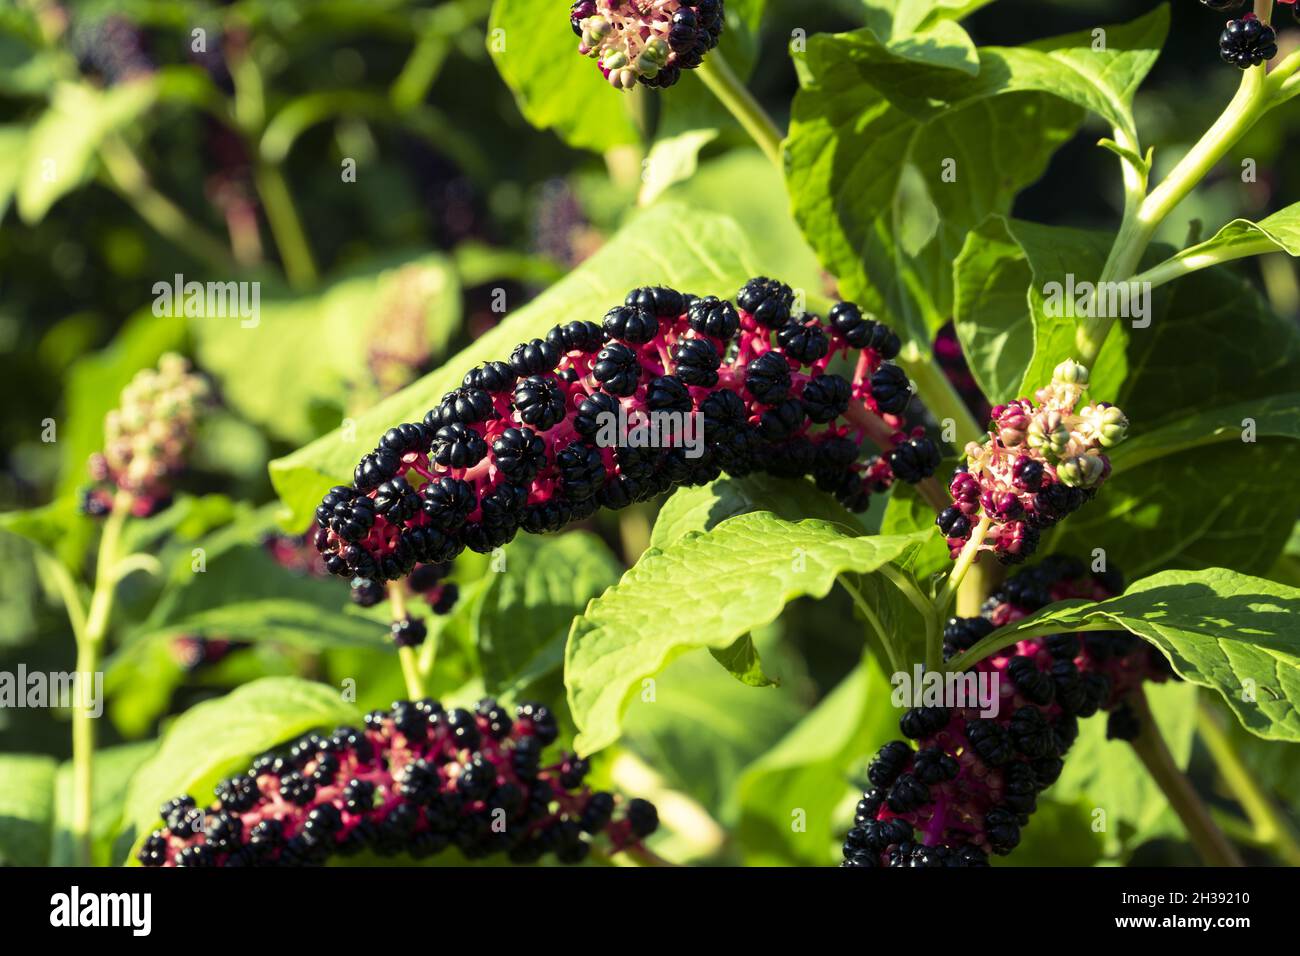 Selective focus shot of lakonos berries growing in the garden Stock Photo